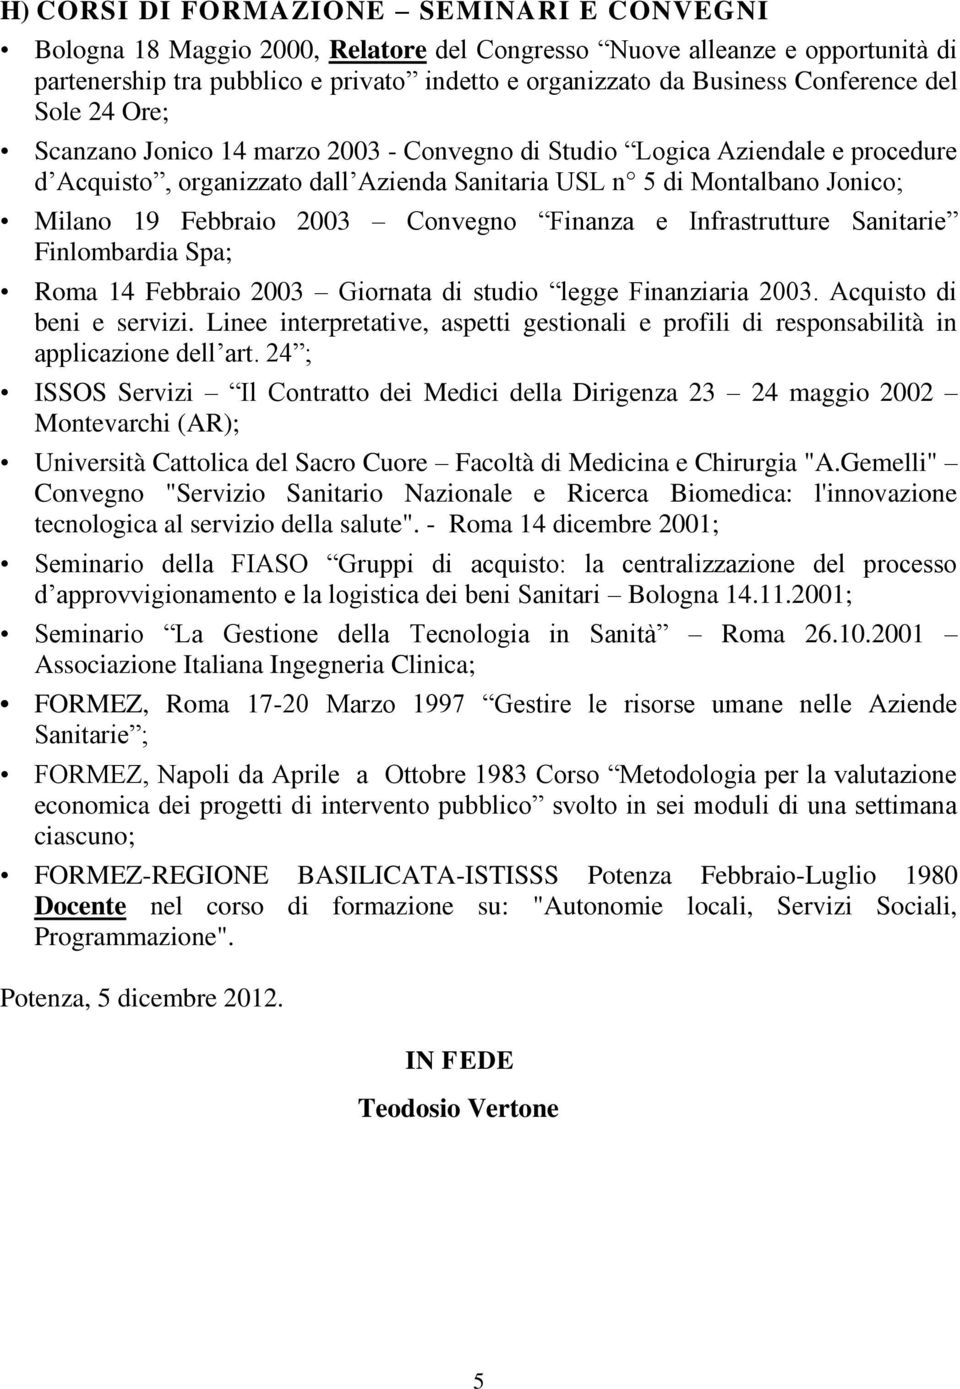 Febbraio 2003 Convegno Finanza e Infrastrutture Sanitarie Finlombardia Spa; Roma 14 Febbraio 2003 Giornata di studio legge Finanziaria 2003. Acquisto di beni e servizi.